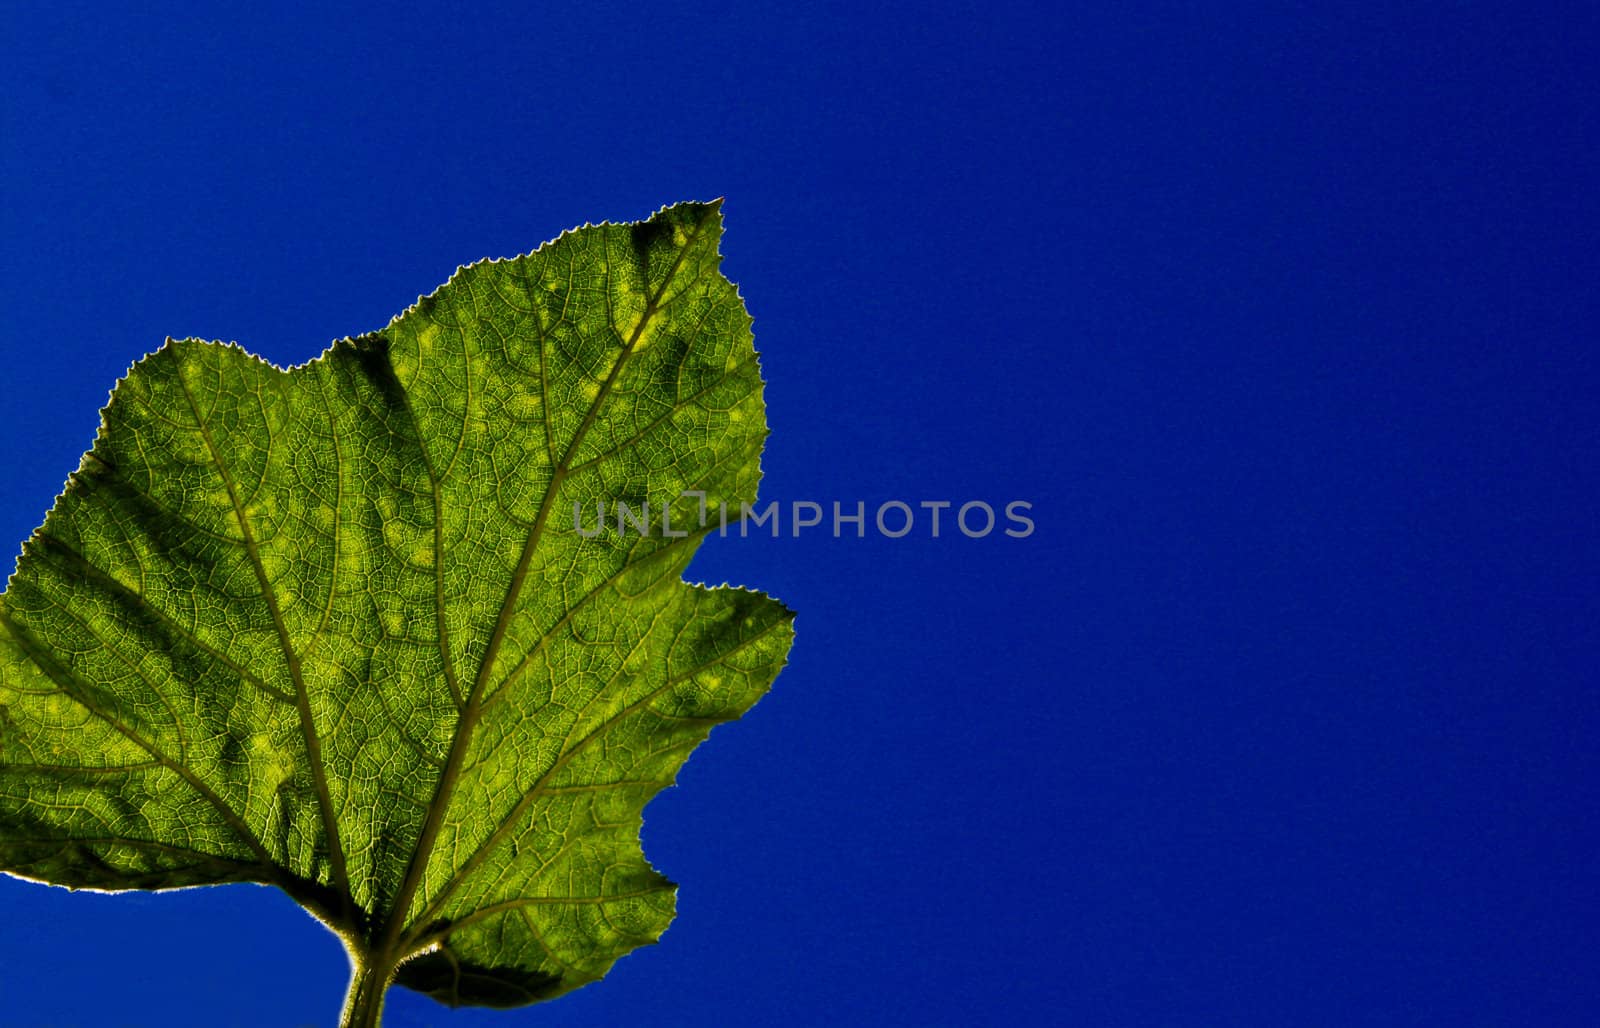 Squash Leaf by ferdie2551